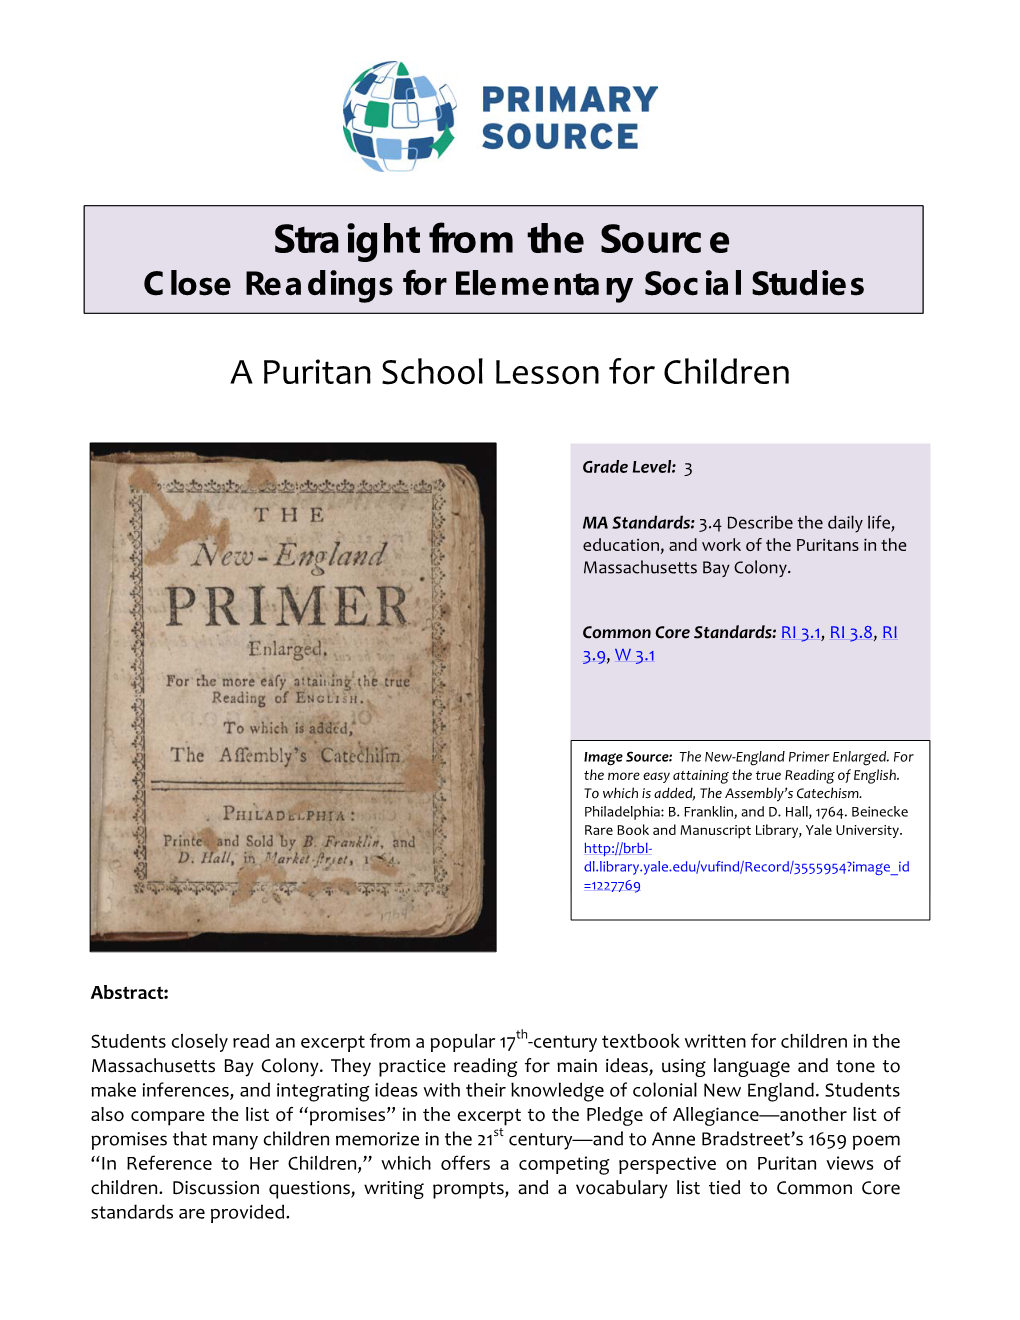 Grade 3 Puritan School Lesson